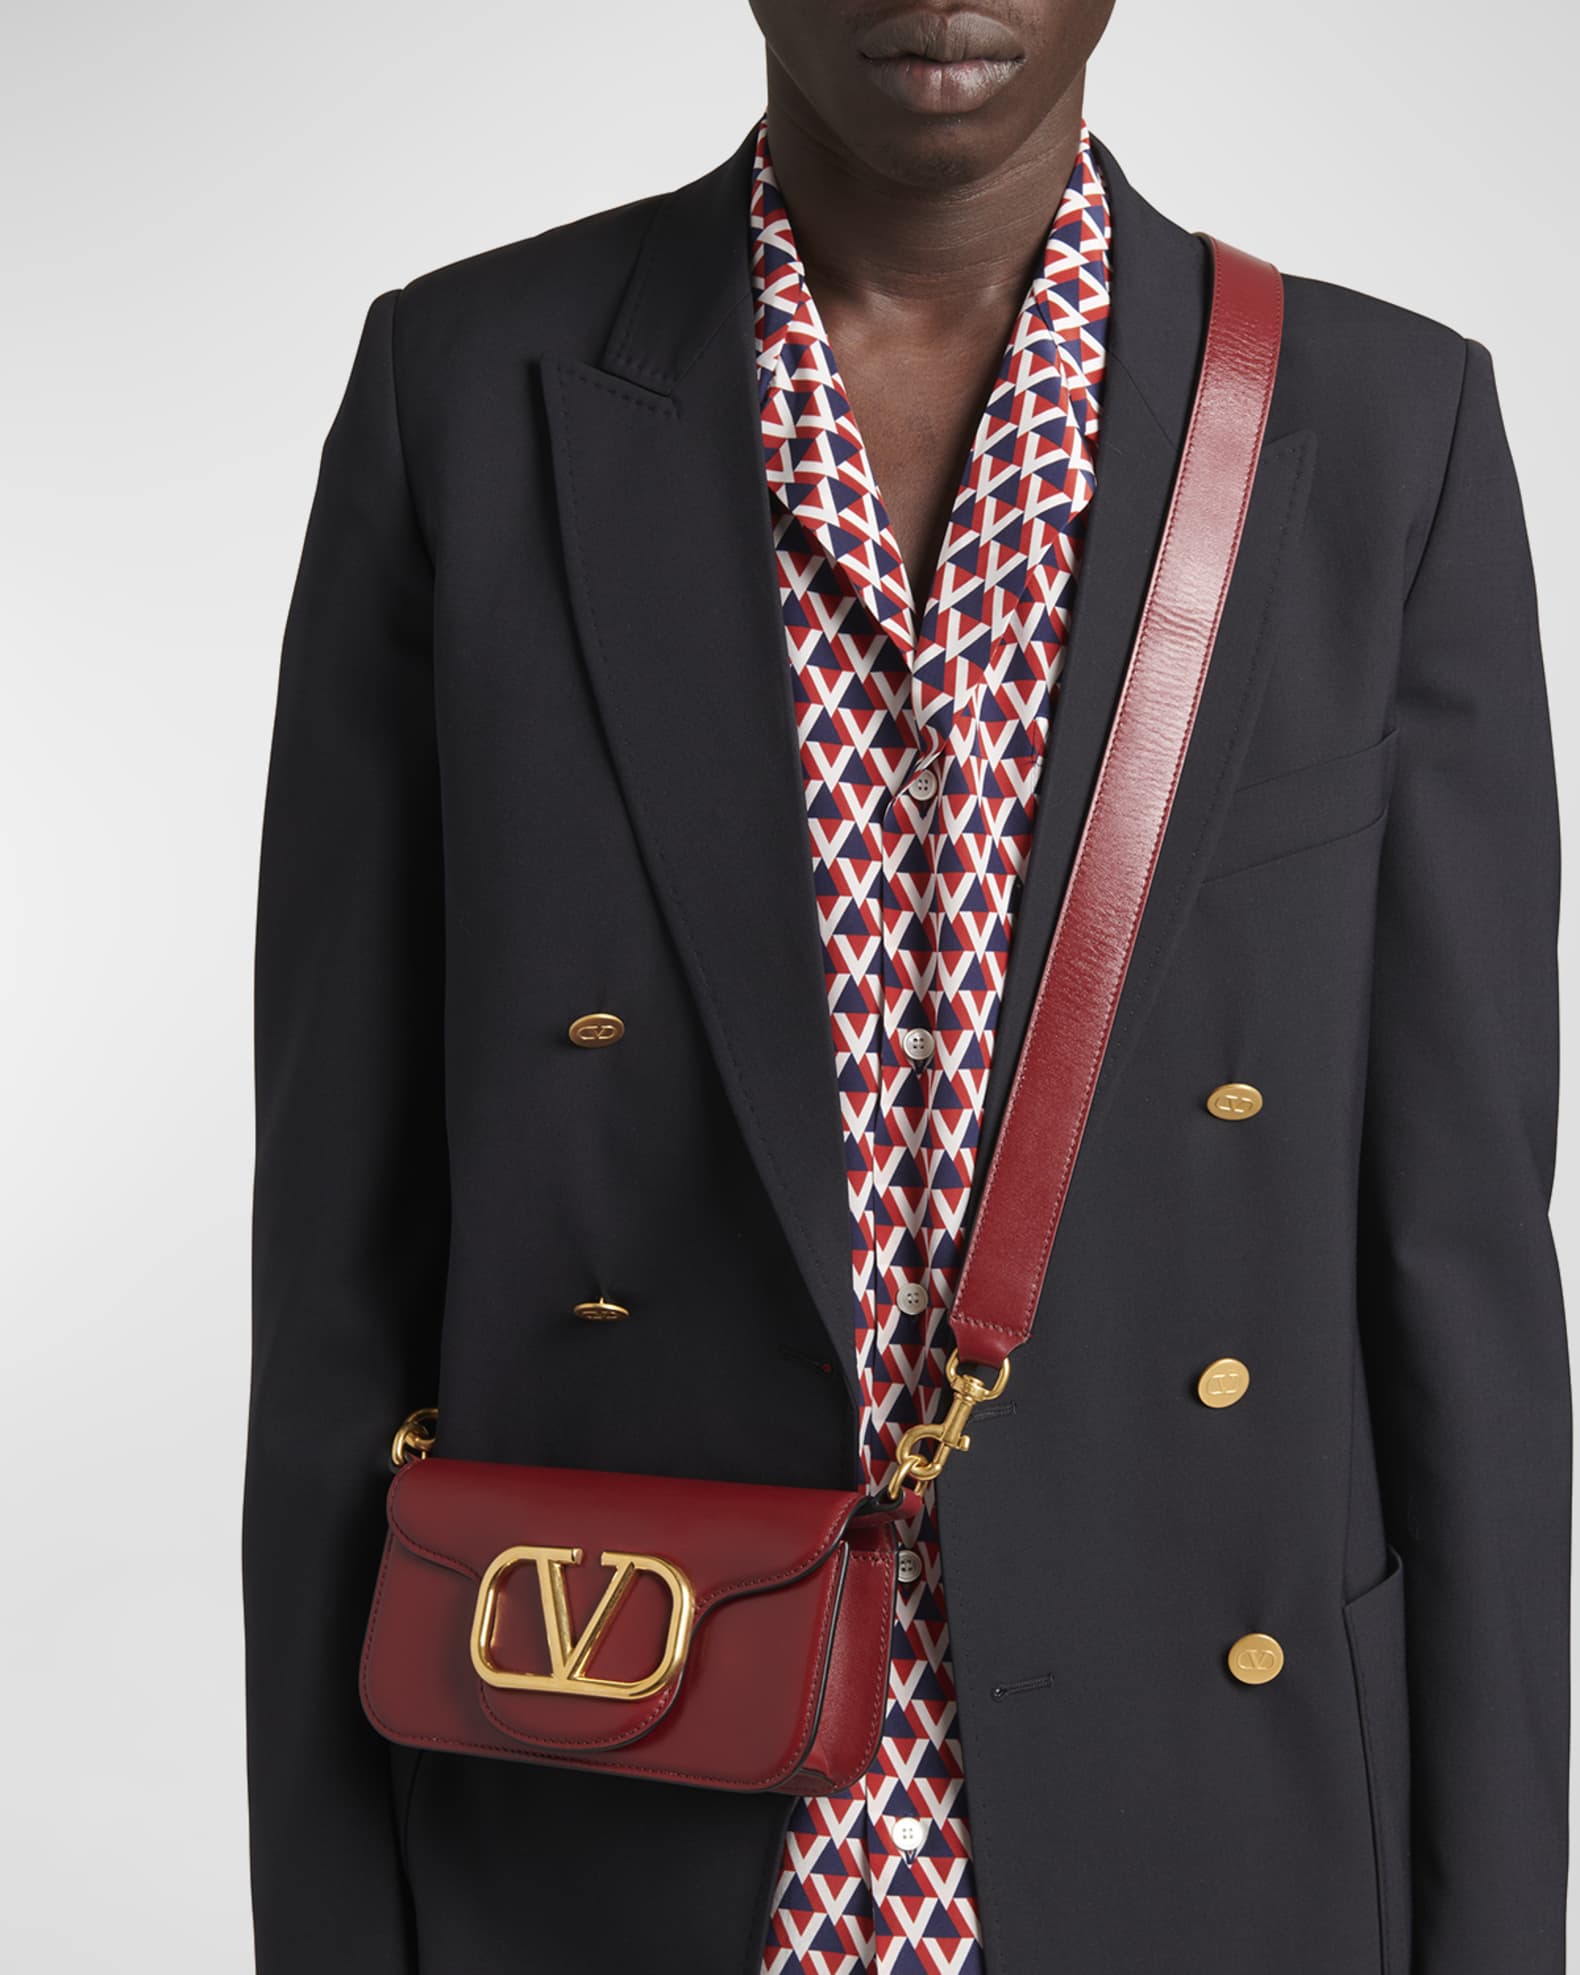 Valentino Garavani Men's V-Logo Leather Mini Shoulder Bag